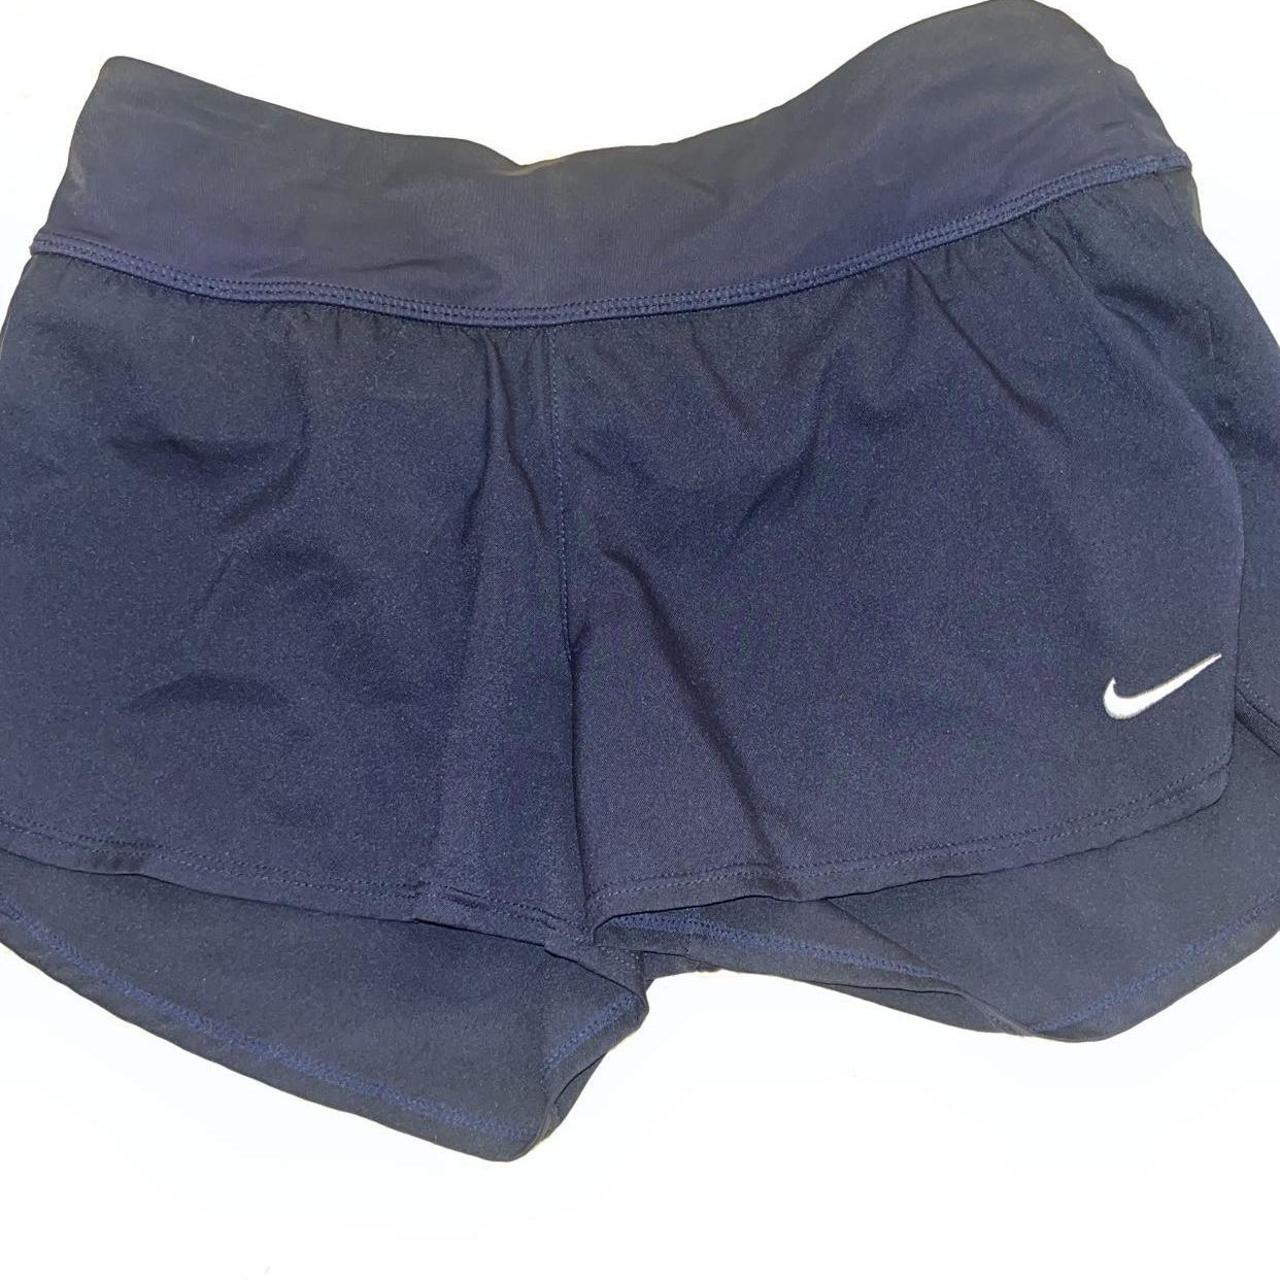 Navy blue Nike running shorts w built in underwear - Depop